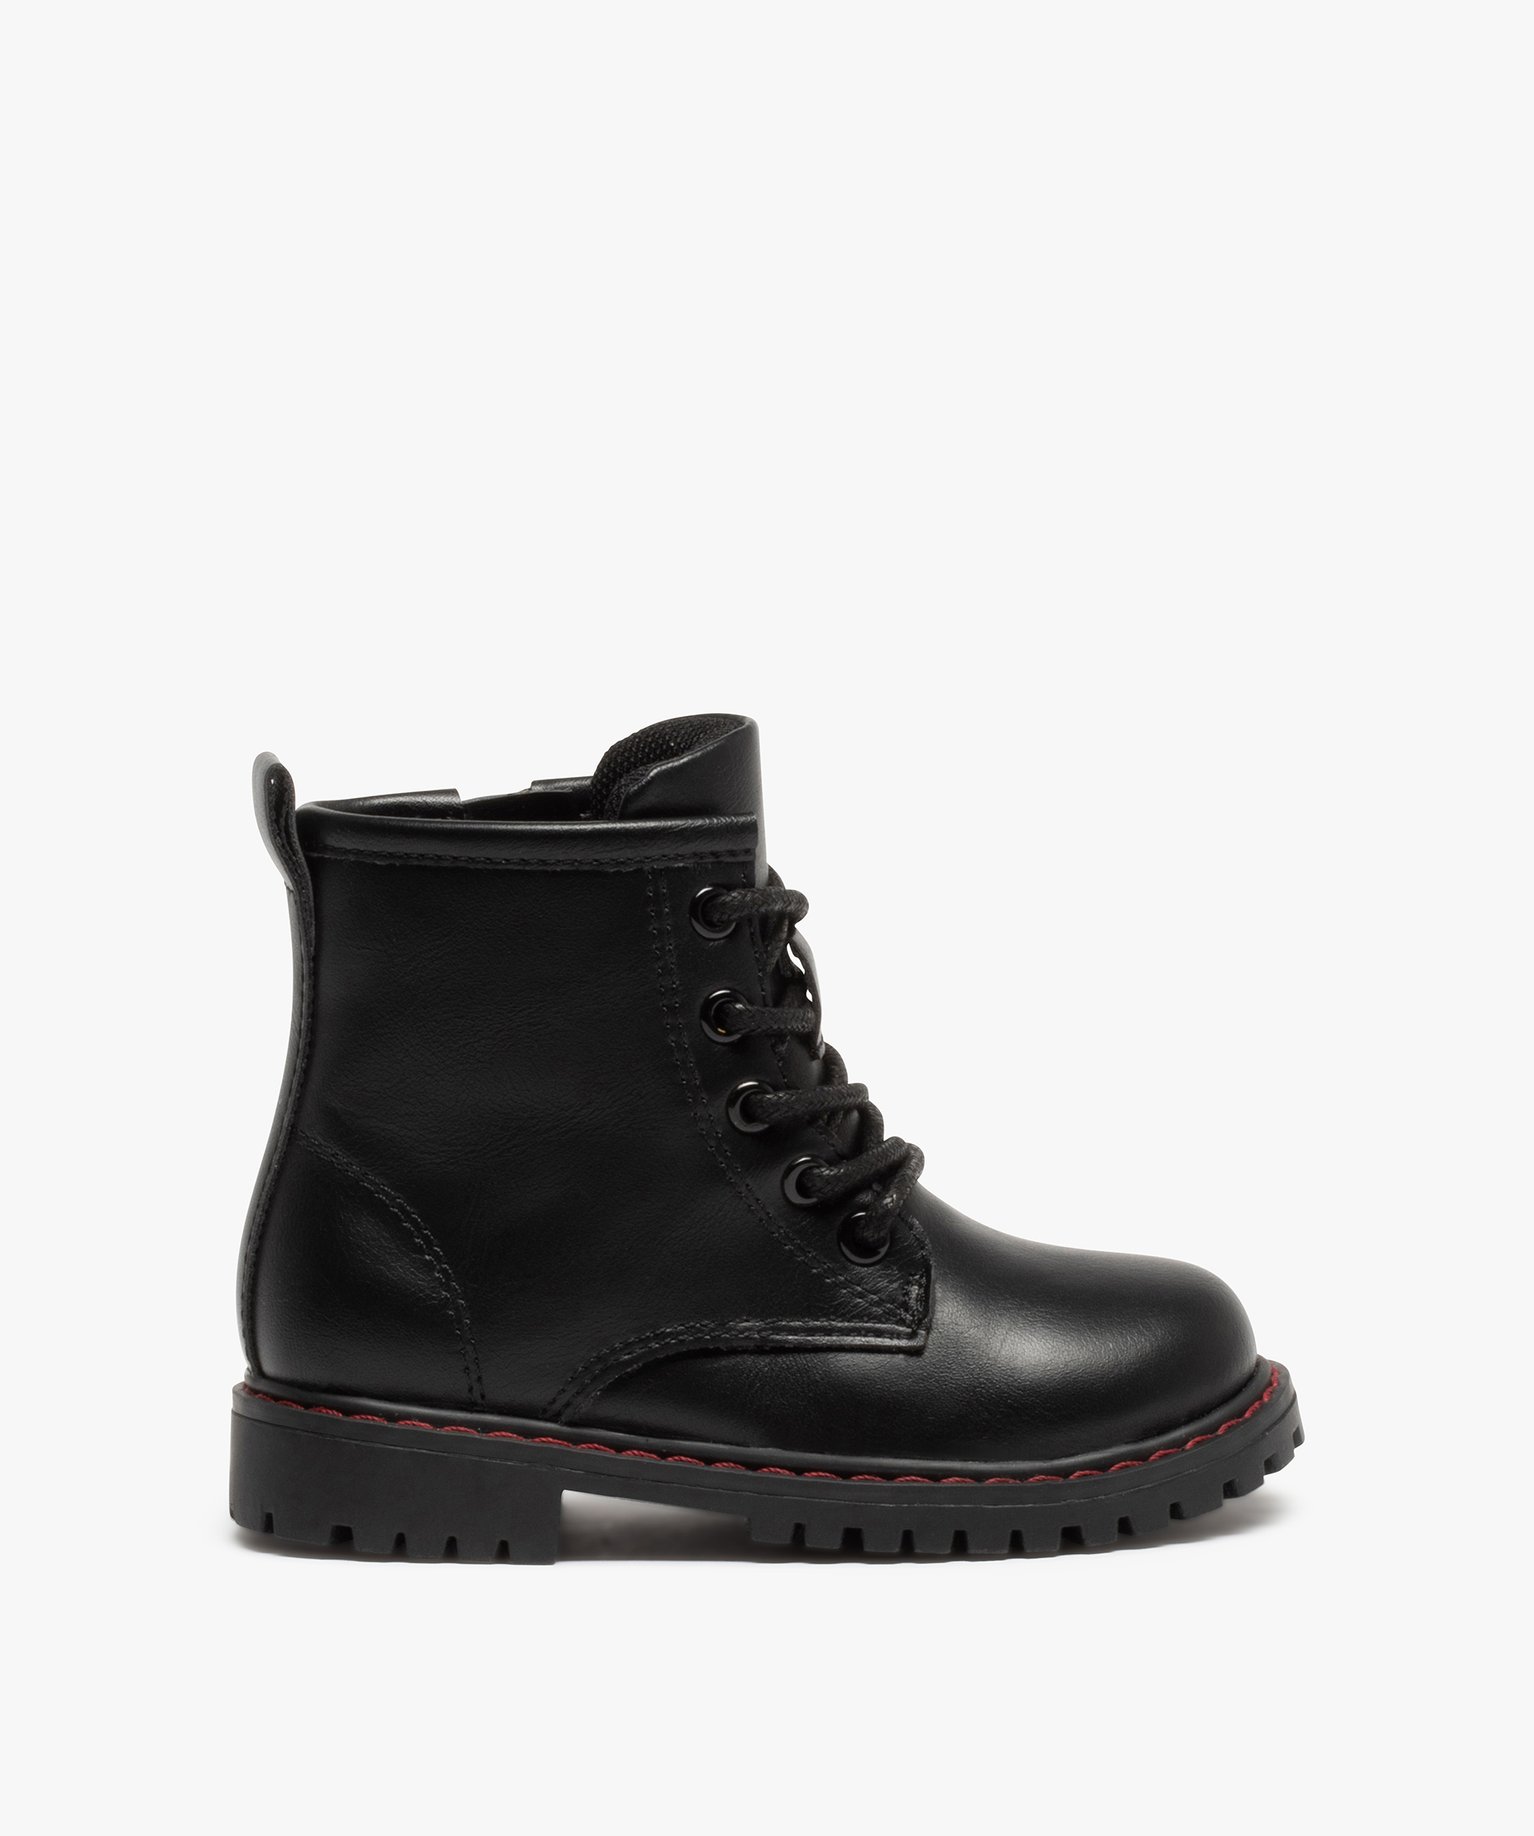 boots bebe garcon unis a semelle crantee style rock noir bottes et chaussures montantes